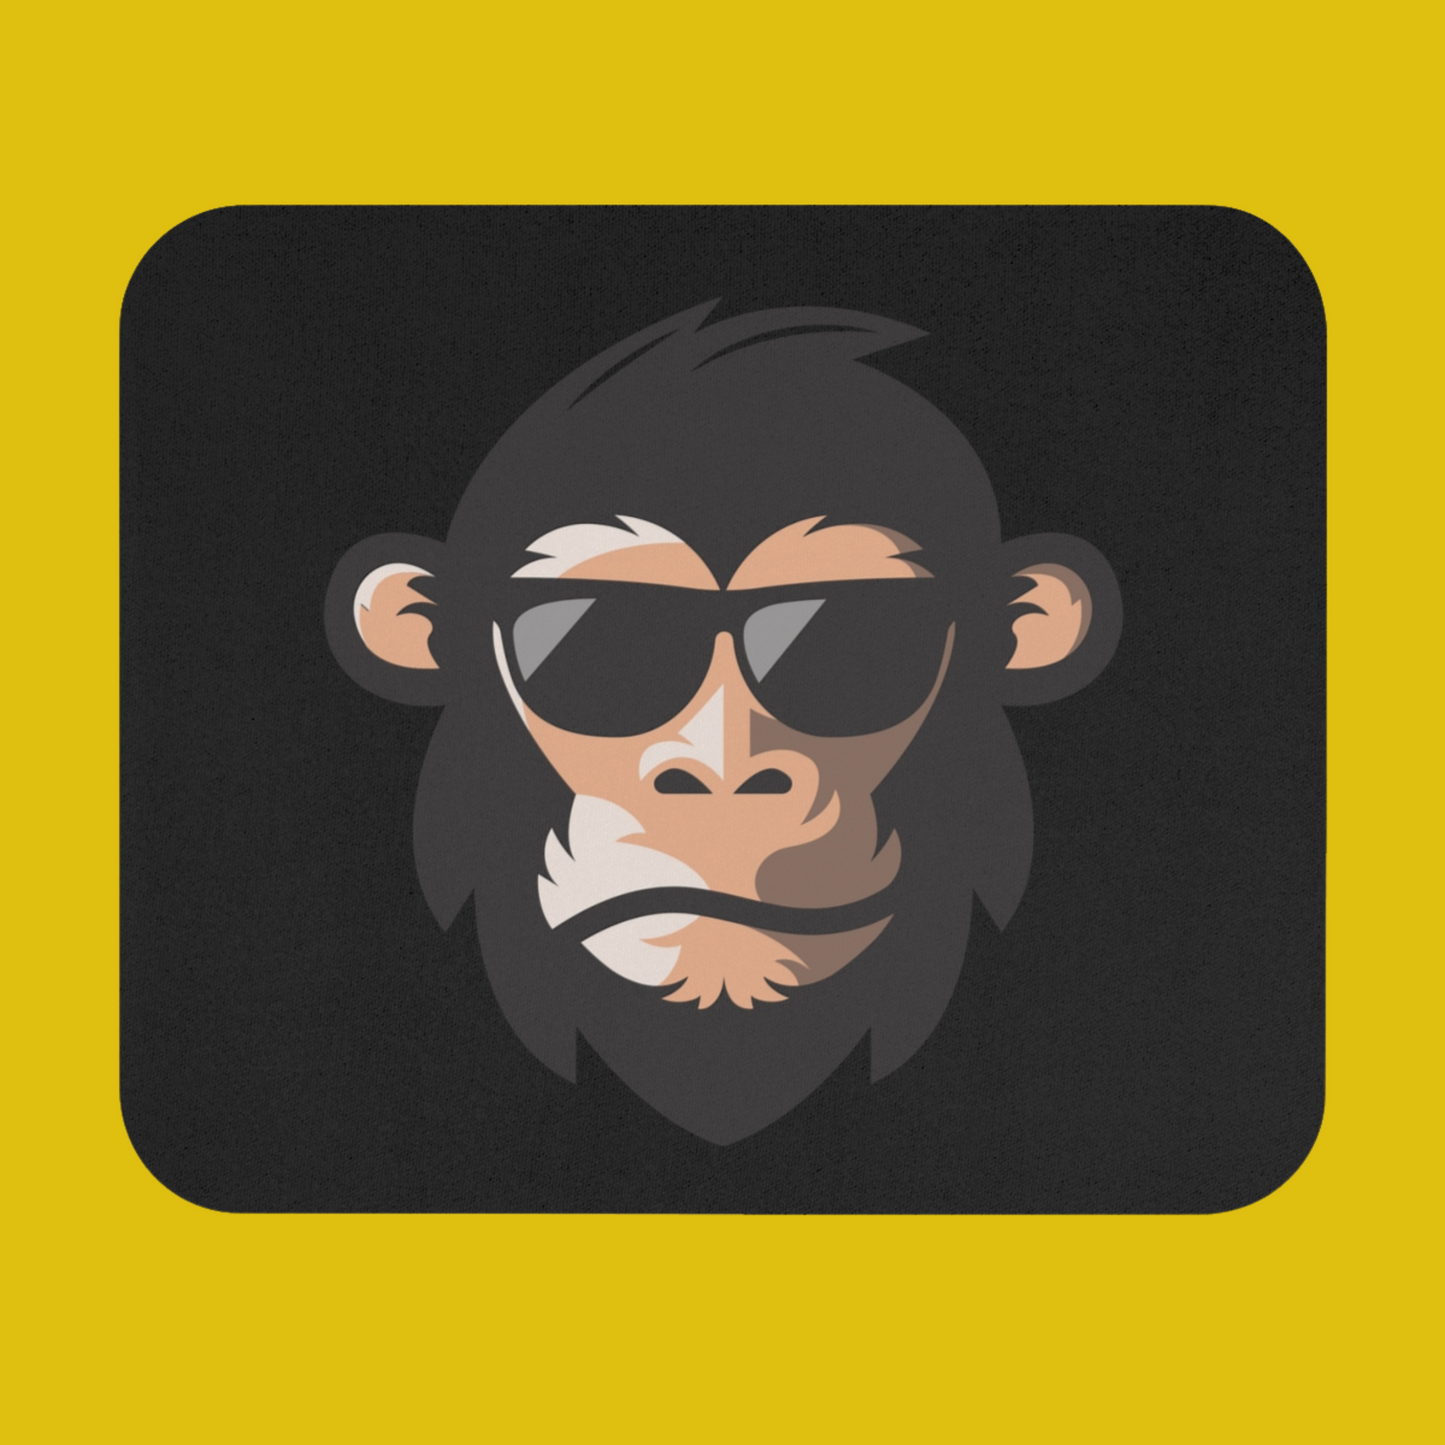 Monkey Mouse pad - Developer / Programmer / Coder / Software Engineer / DevOps